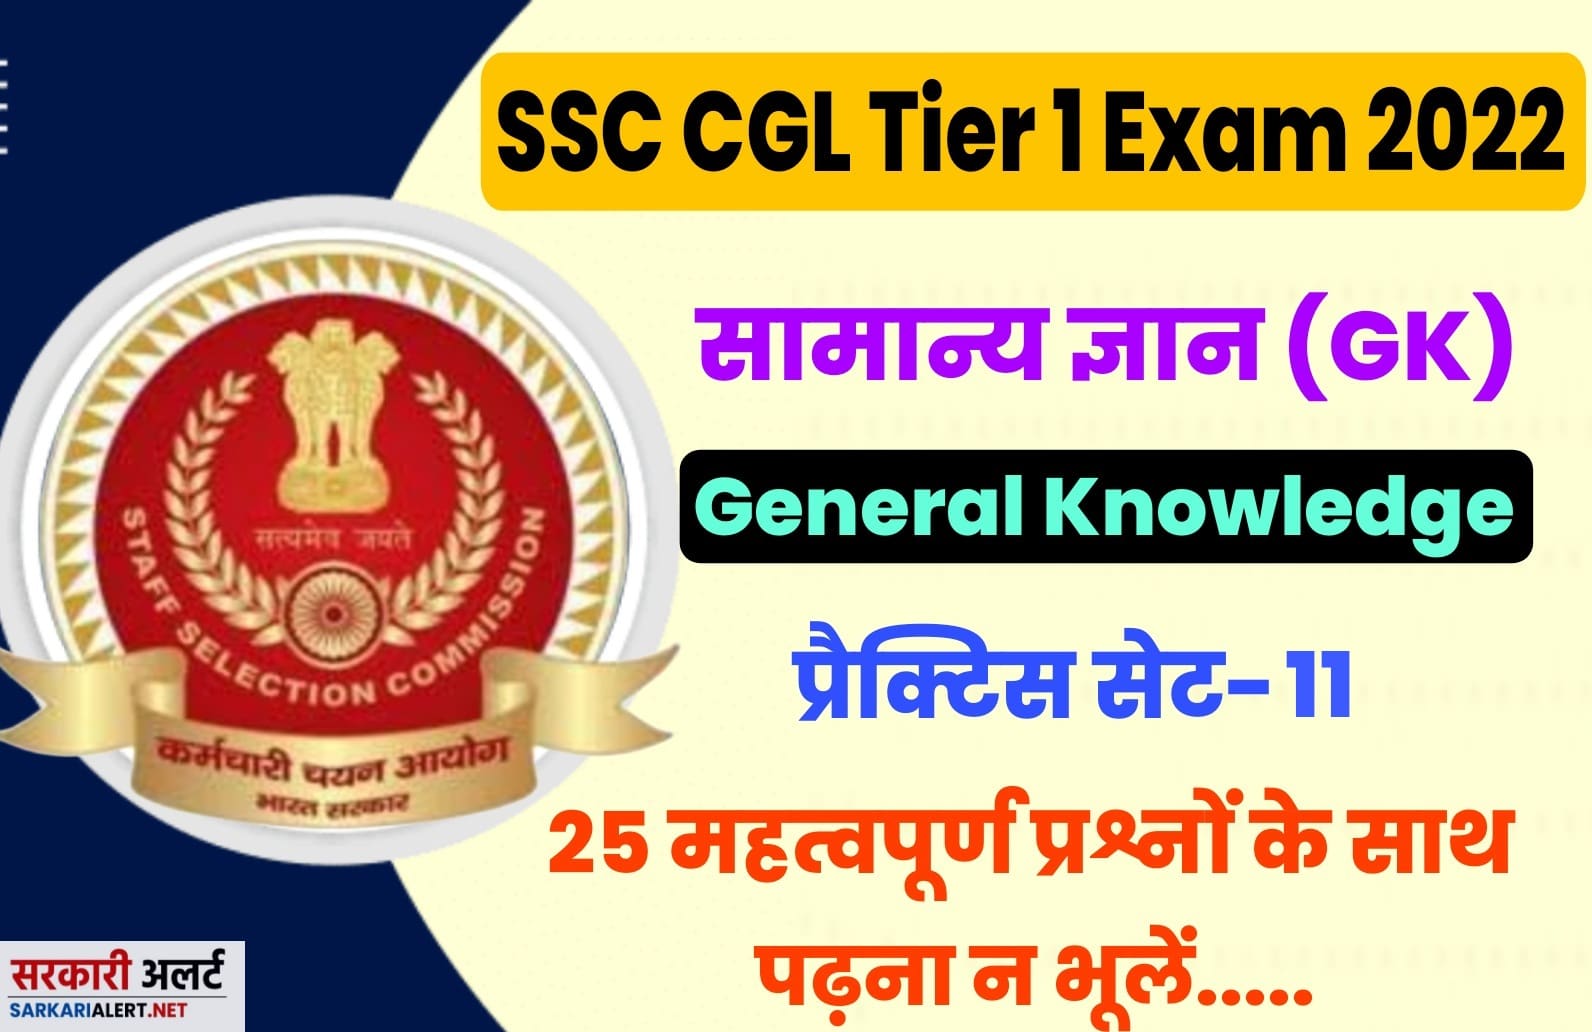 SSC CGL Tier I Exam 2022 GK Practice Set 11 | परीक्षा हॉल में जाने से पहले अतिमहत्वपूर्ण प्रश्नों का अध्ययन अवश्य करें